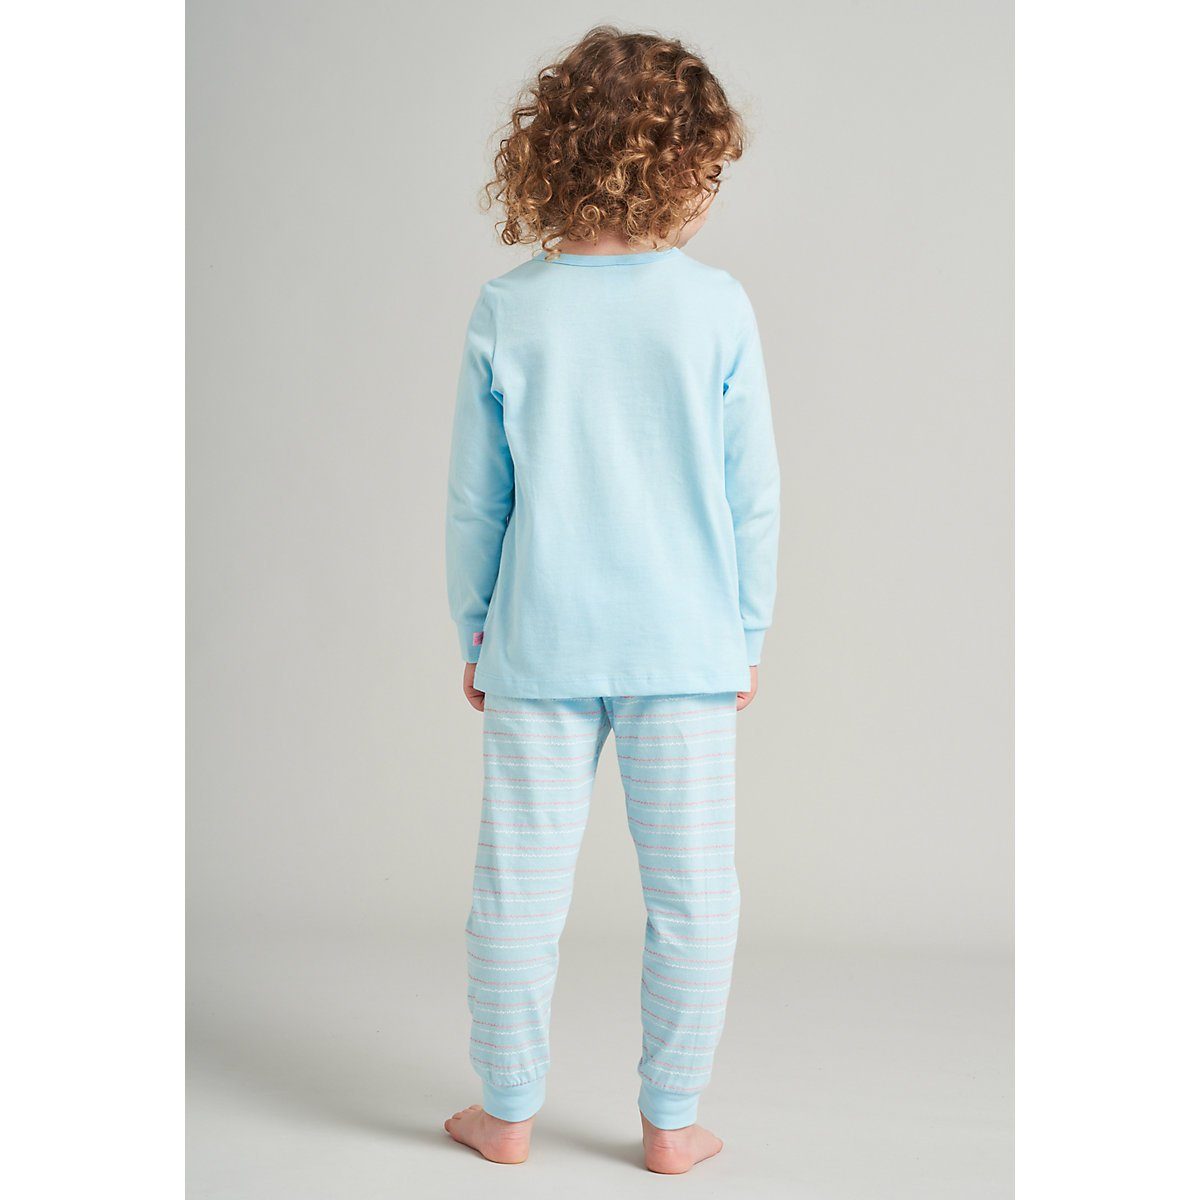 Kinder Kinderunterwäsche Schiesser Schlafanzug Schlafanzug für Mädchen